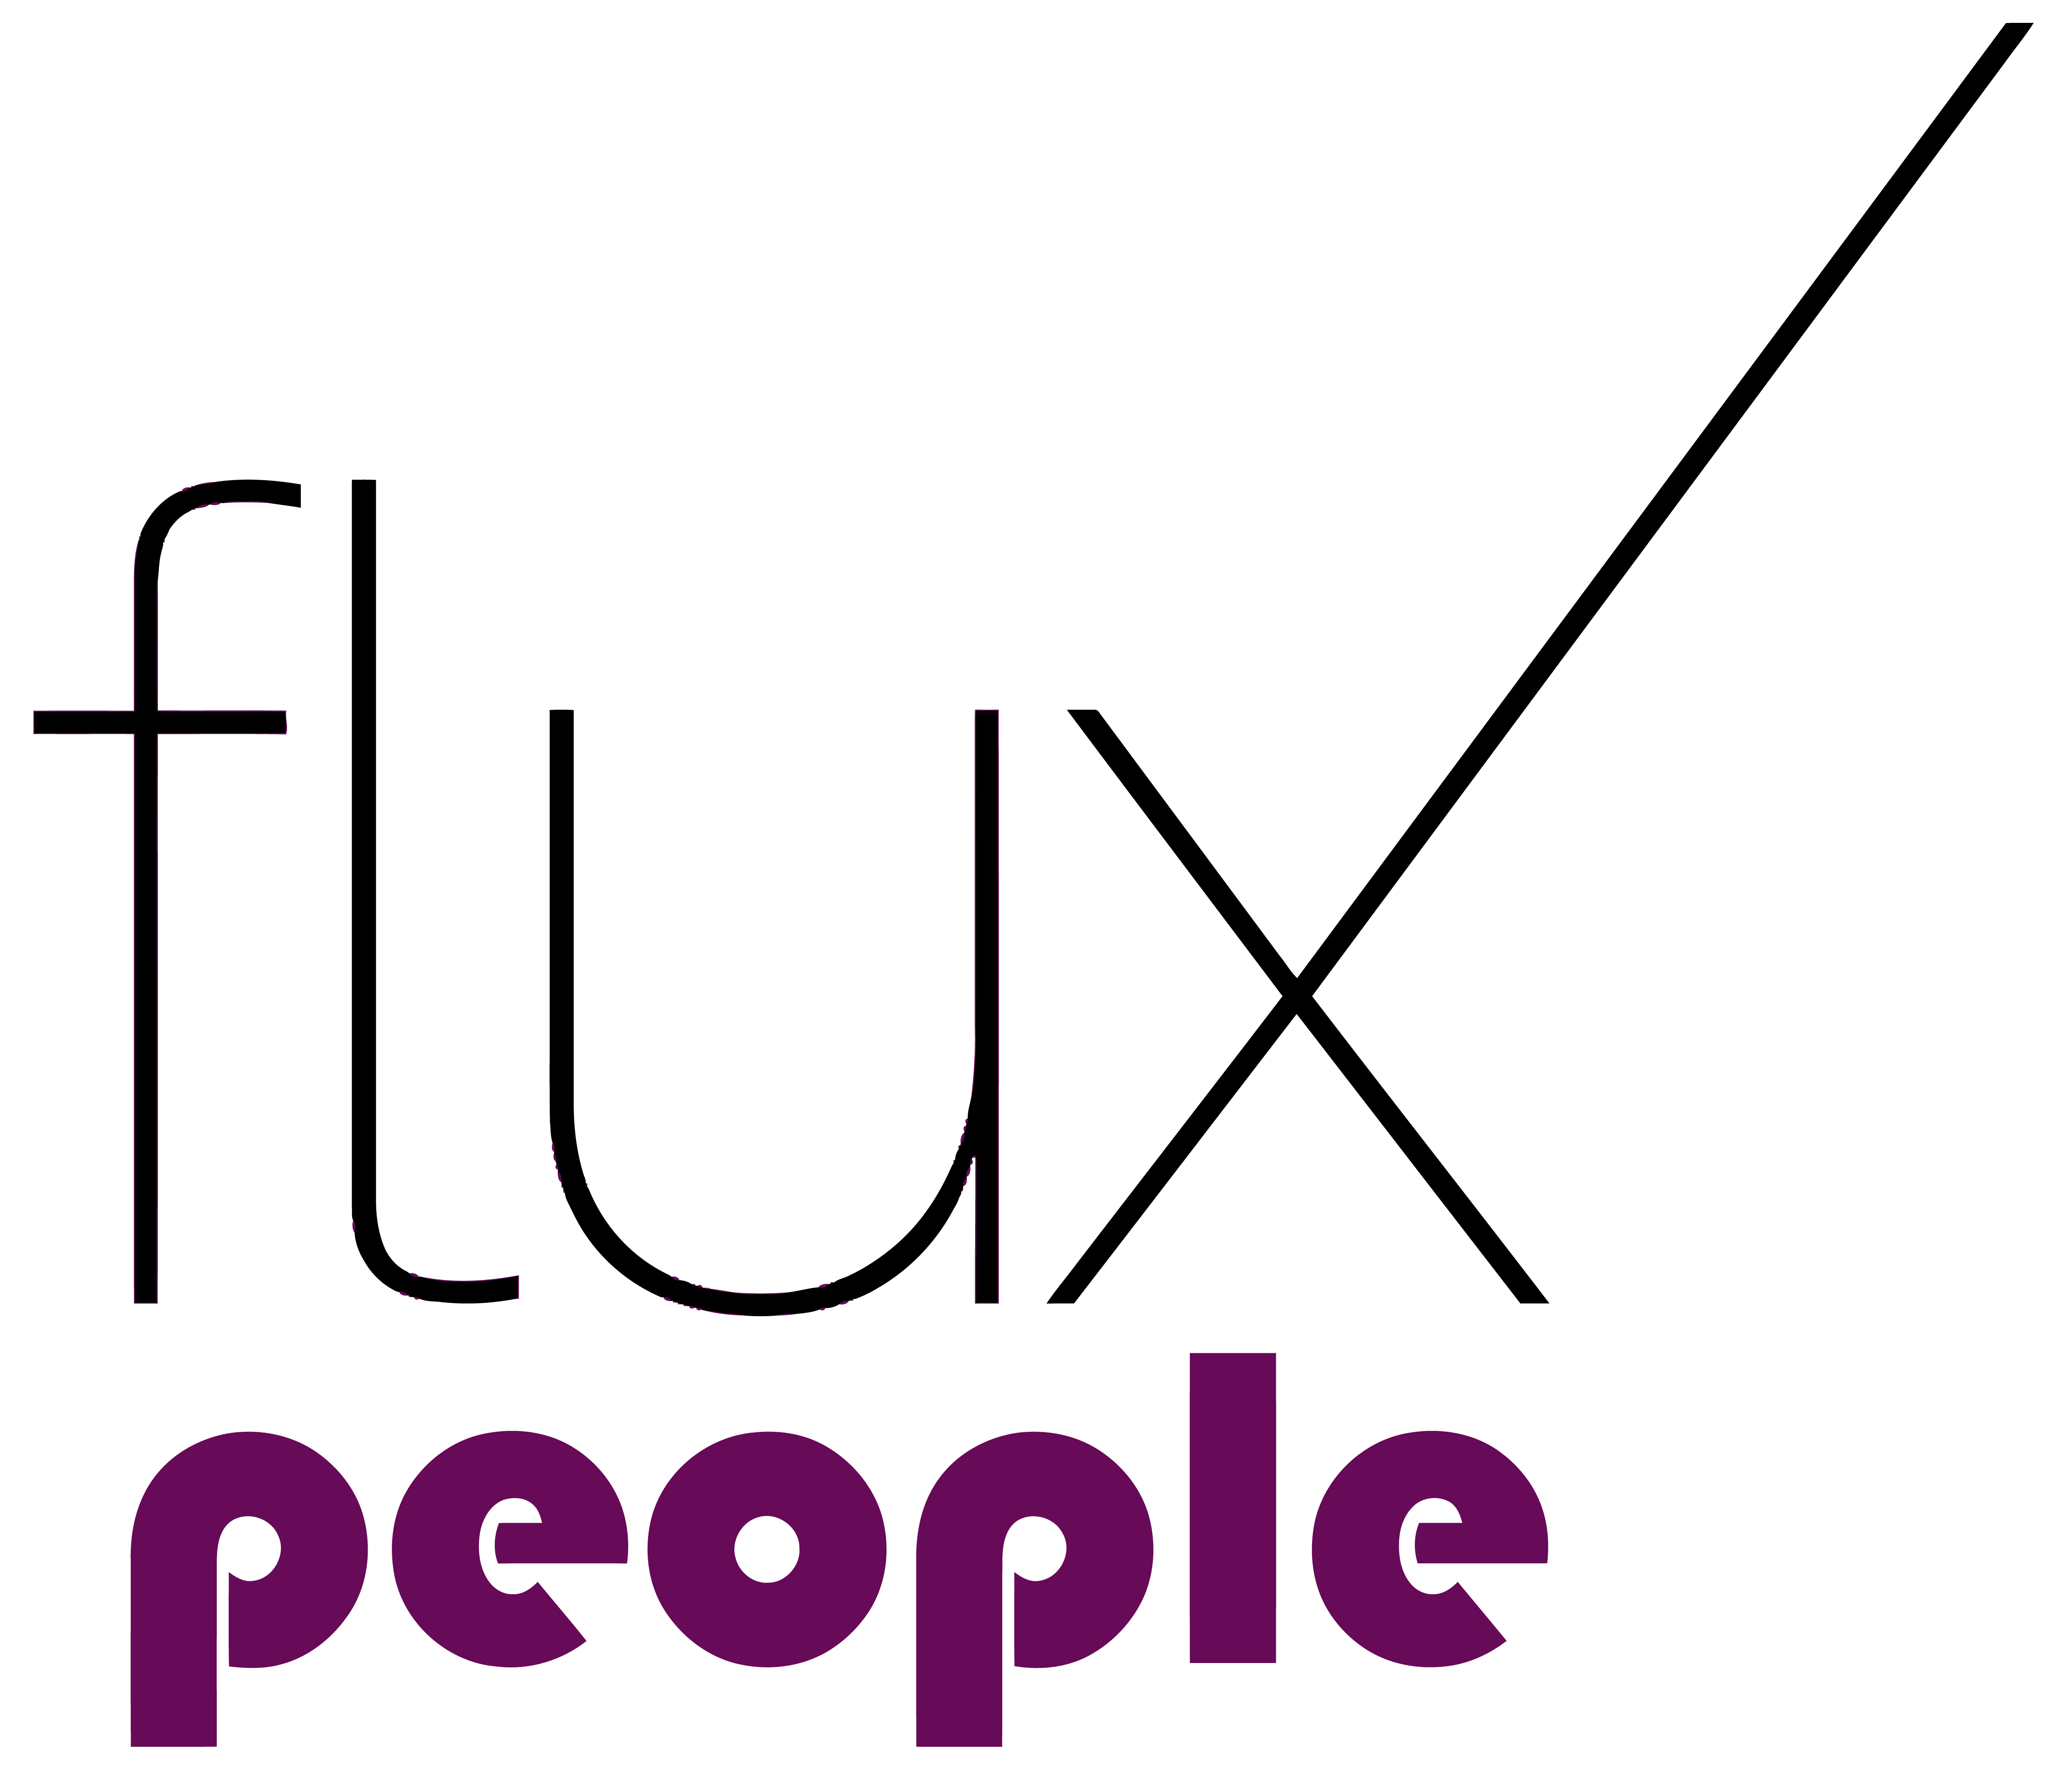 Flux people